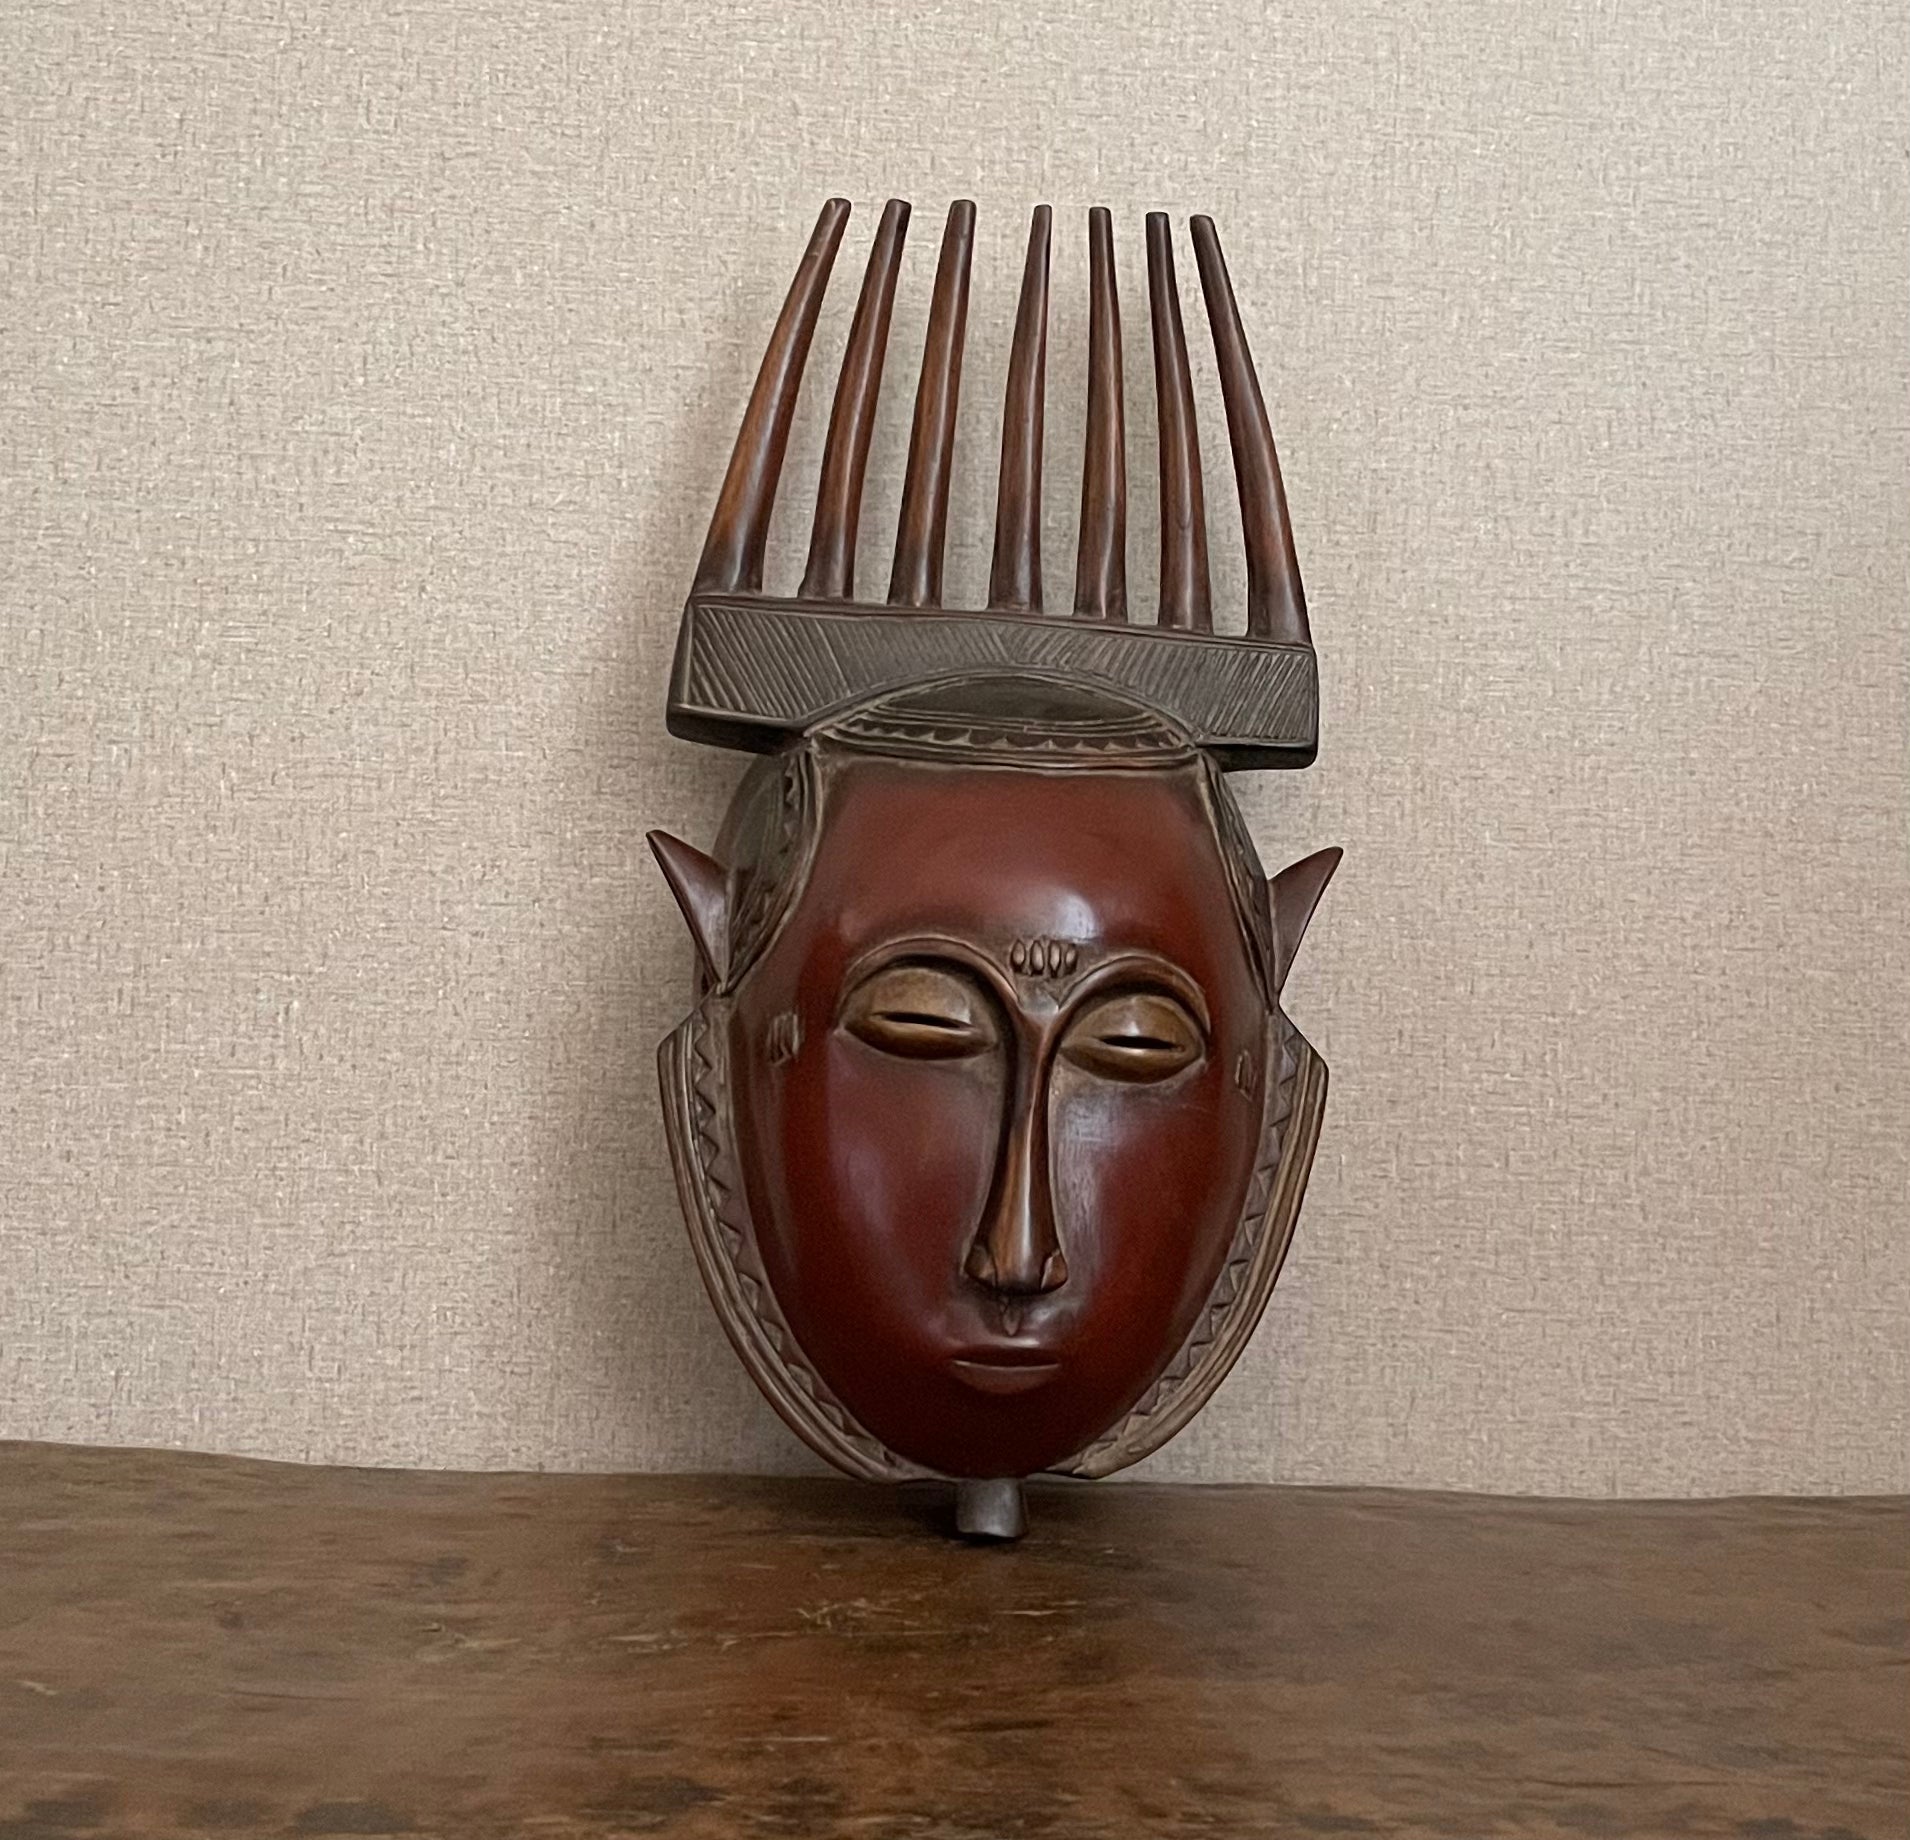 Handcrafted Masks - African Art - Wood Carving - Artwork Decor - Vintage - African Plural Art - Hand Carved Wooden,  Baule Comb Mask, African Vintage, Wall Decor Art